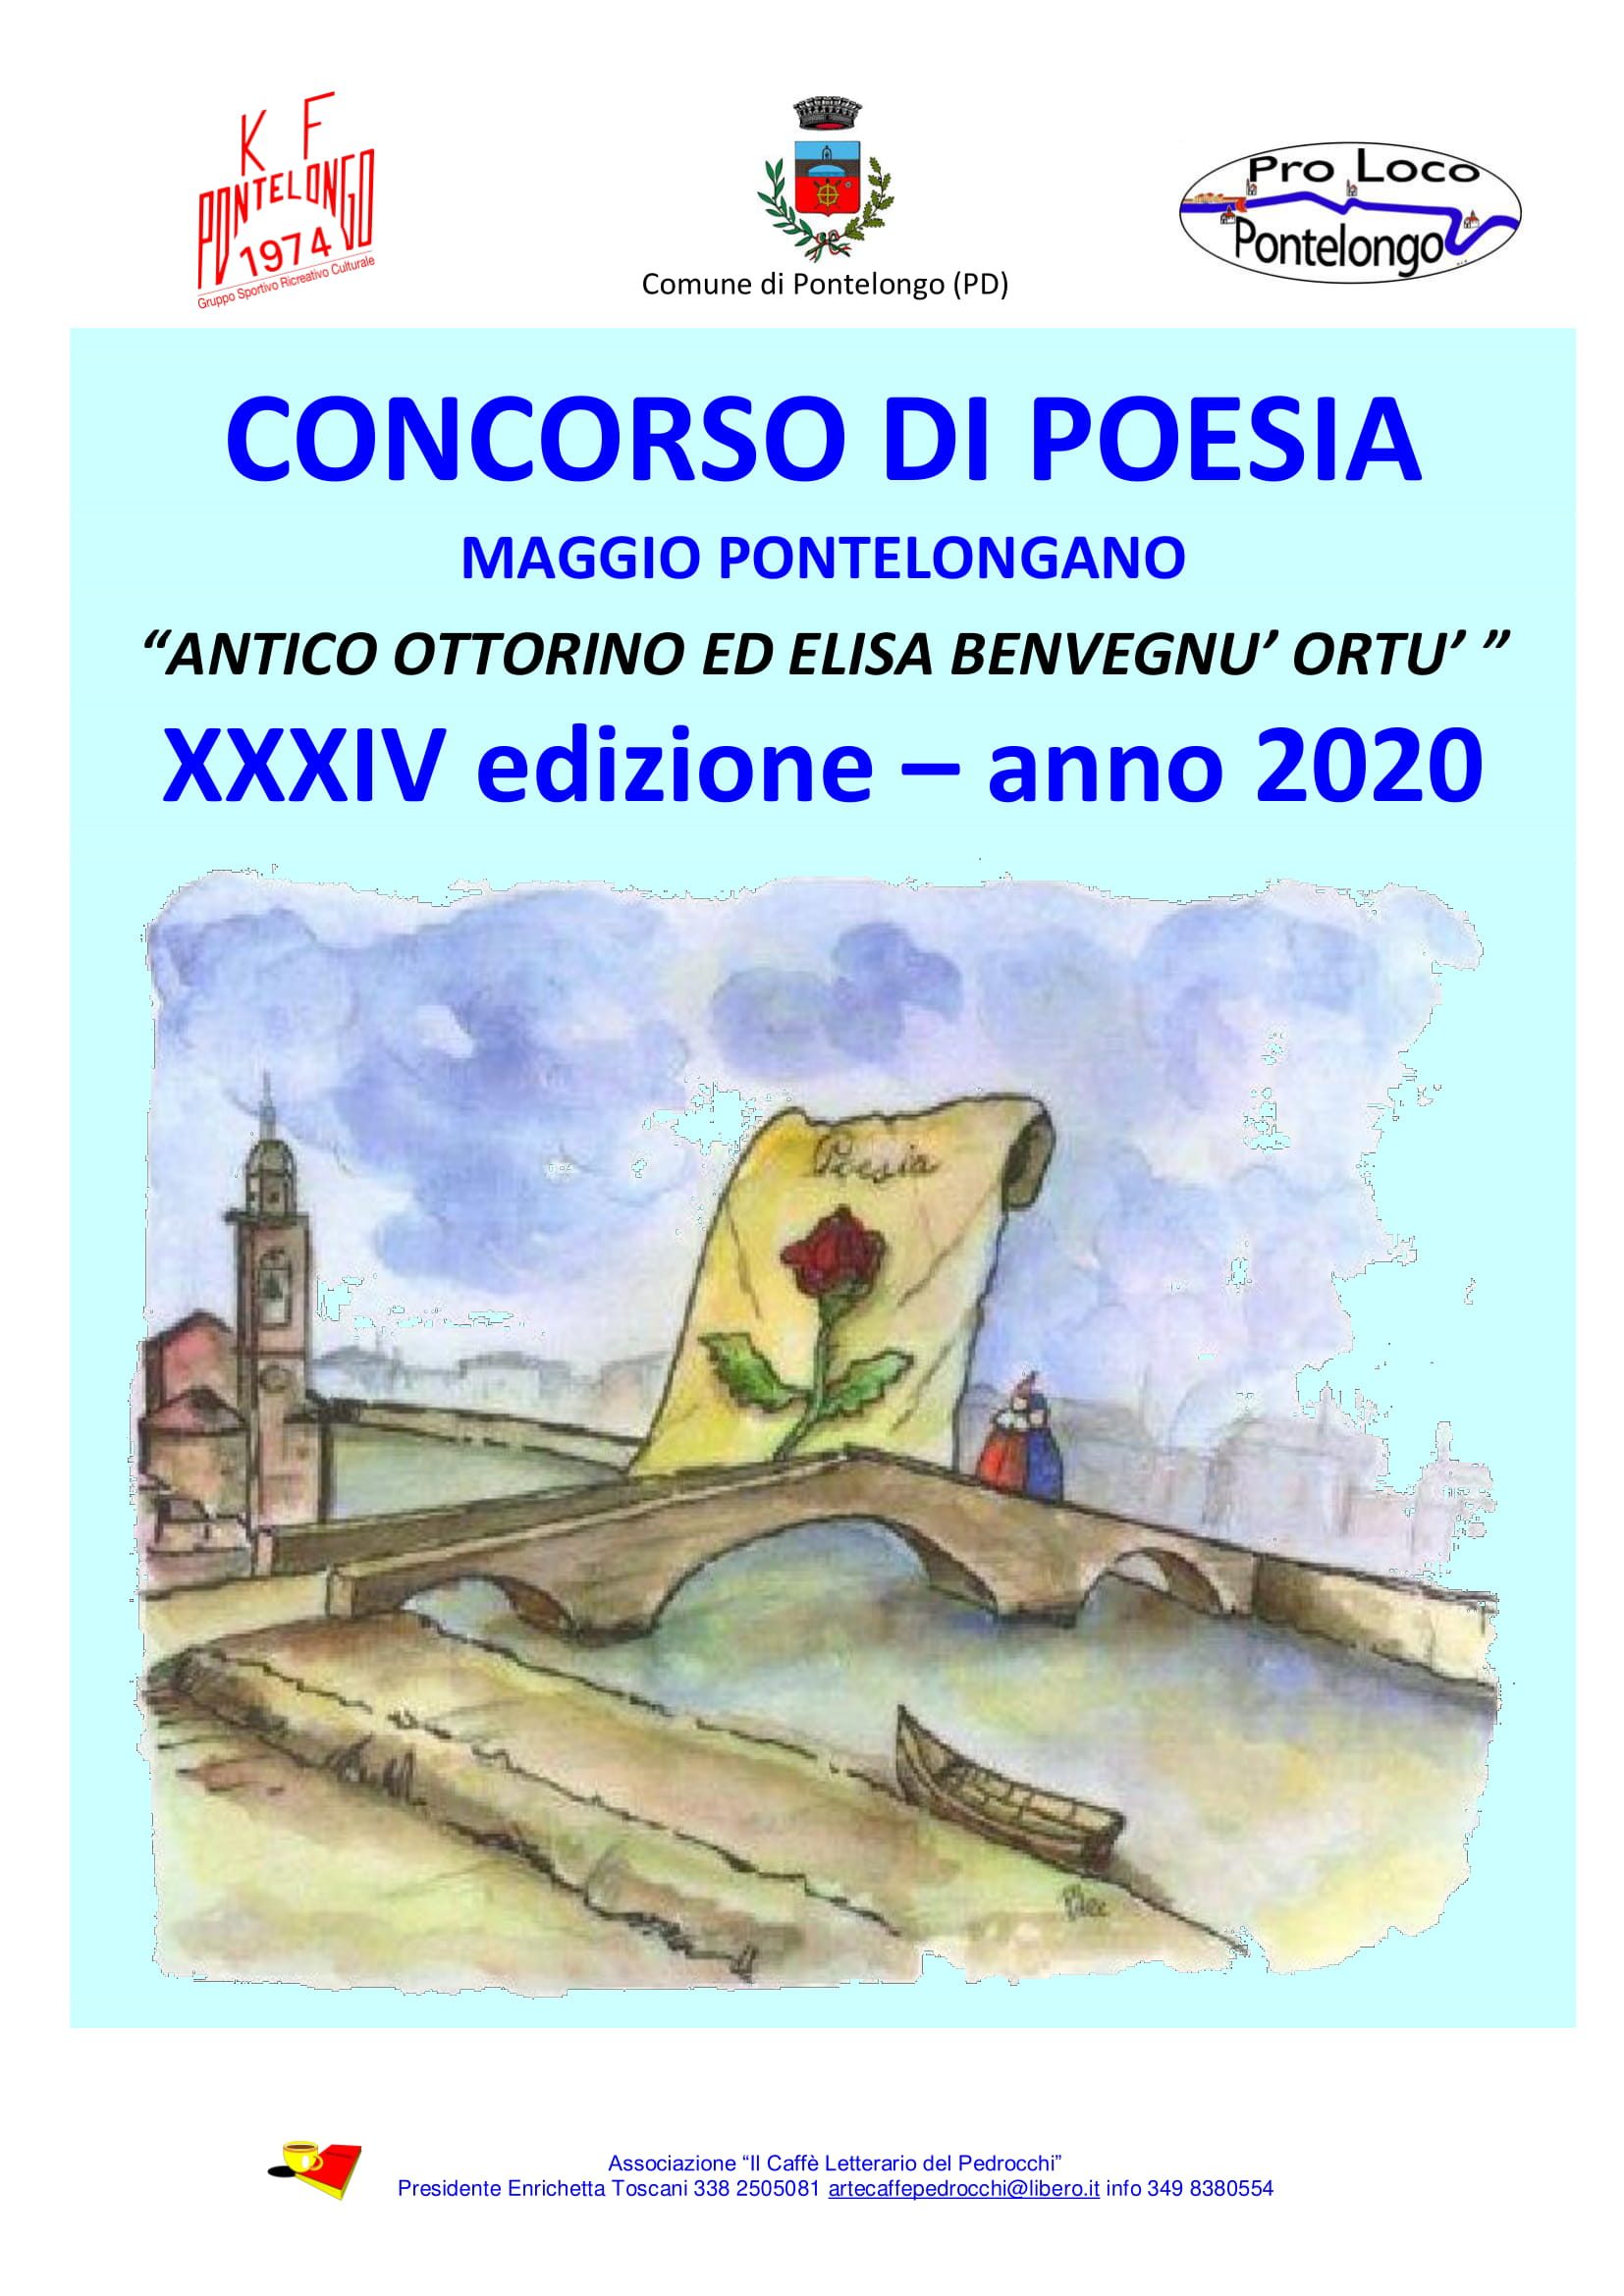 XXXIV Edizione Concorso di Poesia: “Antico Ottorino ed Elisa Benvegnu’ Ortu”